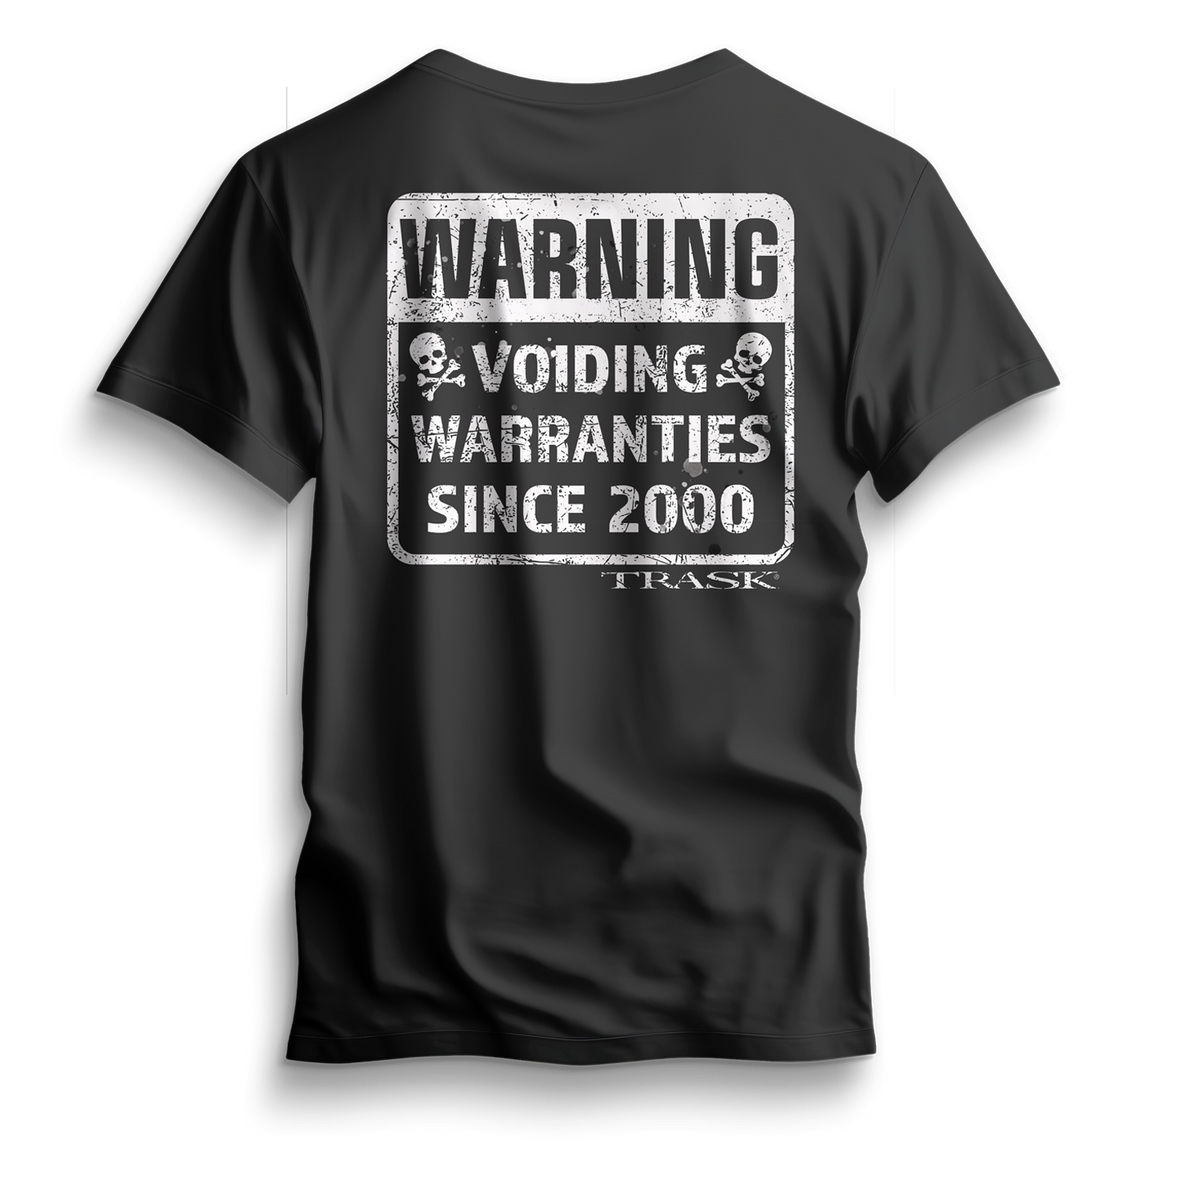 Voiding Warranties T-Shirt